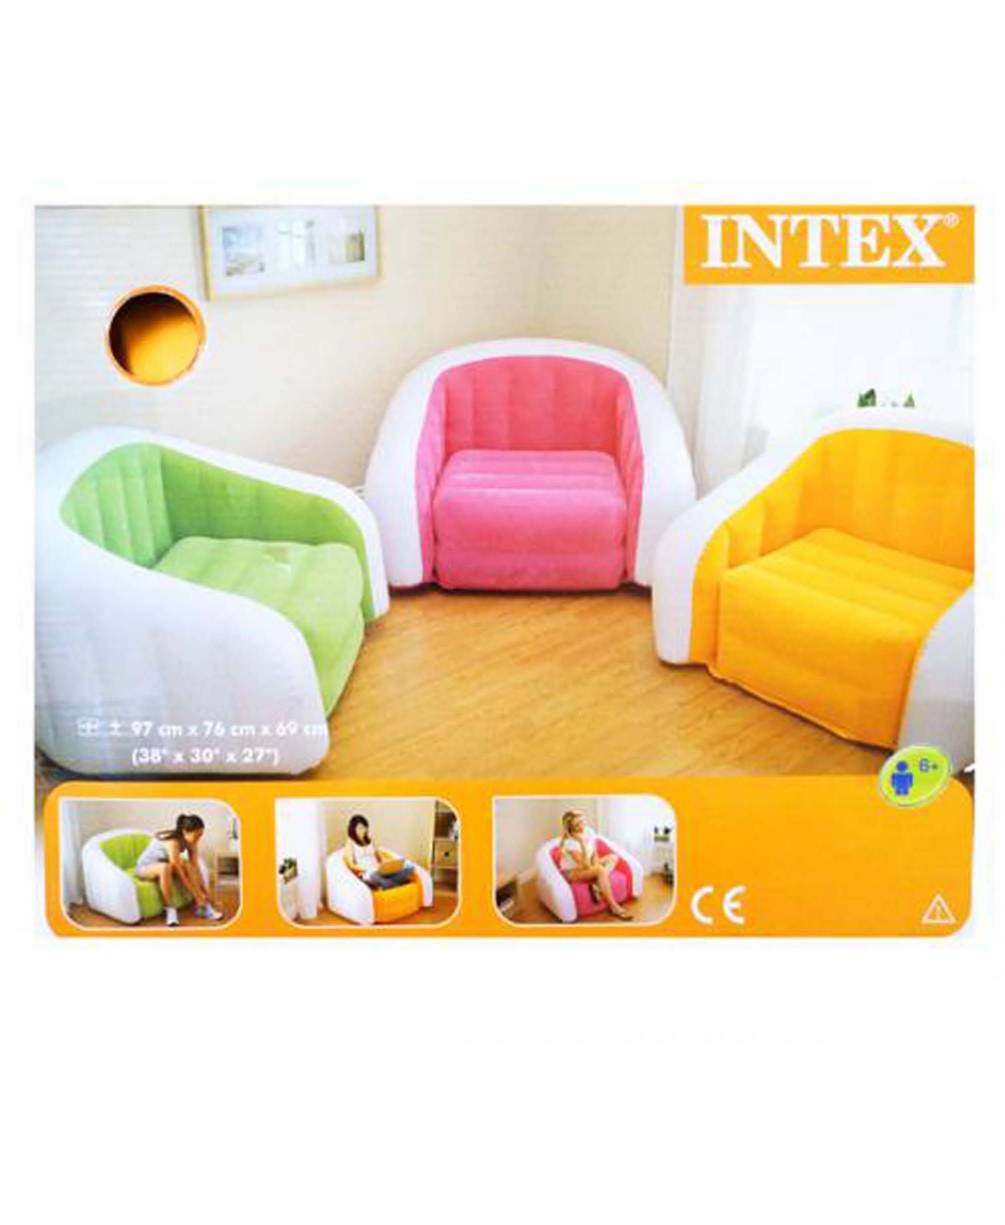 Кресло INTEX, Cafe Club Chair, размер 67х76х69 см (68571NP)